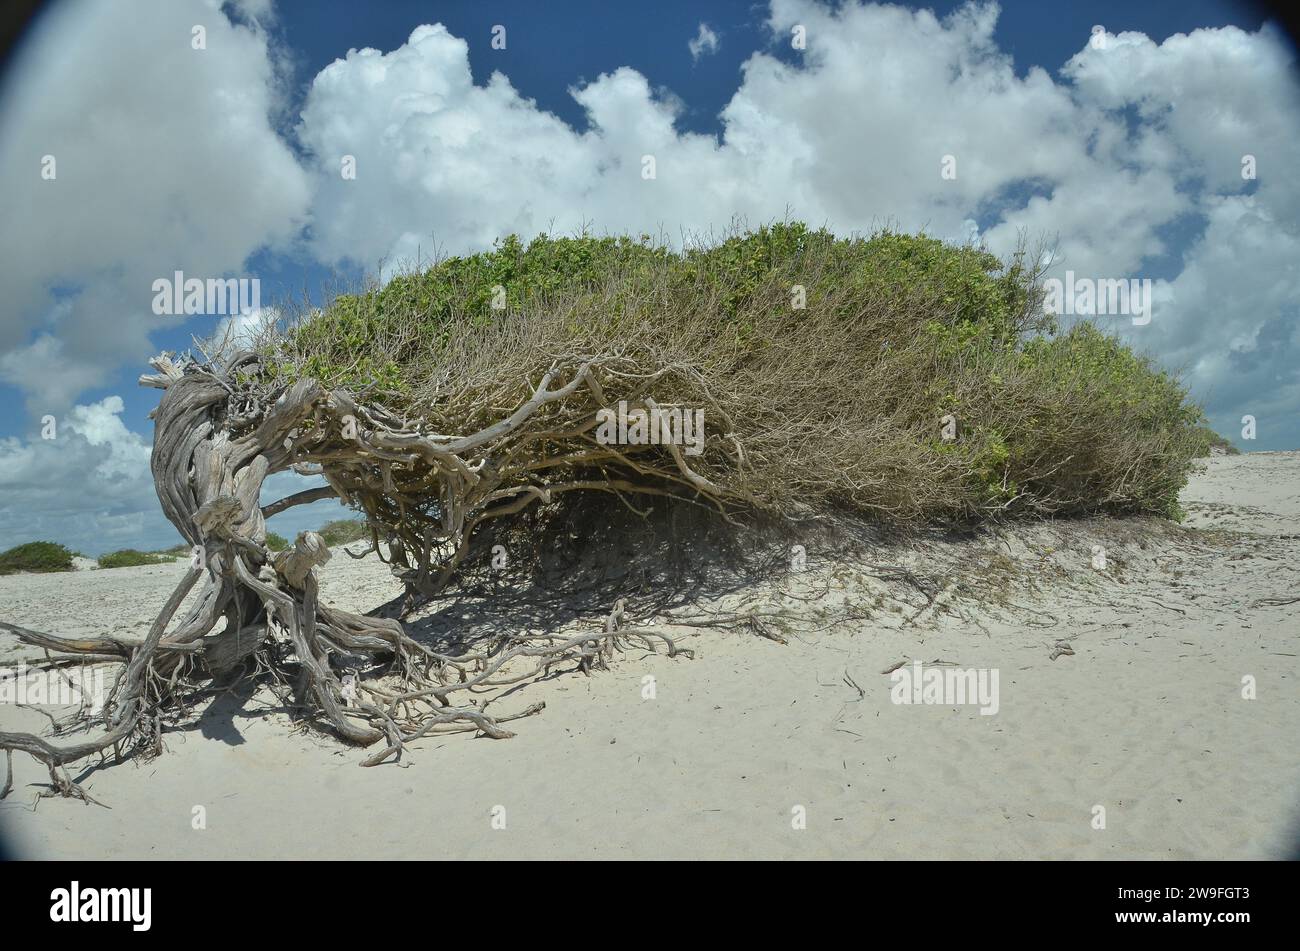 Conocarpus erectus, communément appelé buttonwood ou mangrove bouton, une espèce d'arbuste de mangrove de la famille des Combretaceae qui pousse sur les rivages dans les régions tropicales et subtropicales du monde entier - celui-ci, situé dans la municipalité de Cruz, à Praia do Preá (plage PREA), à environ 12 km de Jericoacoara célèbre, est connu sous le nom de "Árvore da PreguiÇa" ( arbre de paresse ou arbre de salon ), parce que ses racines ont été façonnées par les vents forts de la région, il donne l'impression de se prélasser d'un côté. Etat du Ceara, Brésil. Banque D'Images